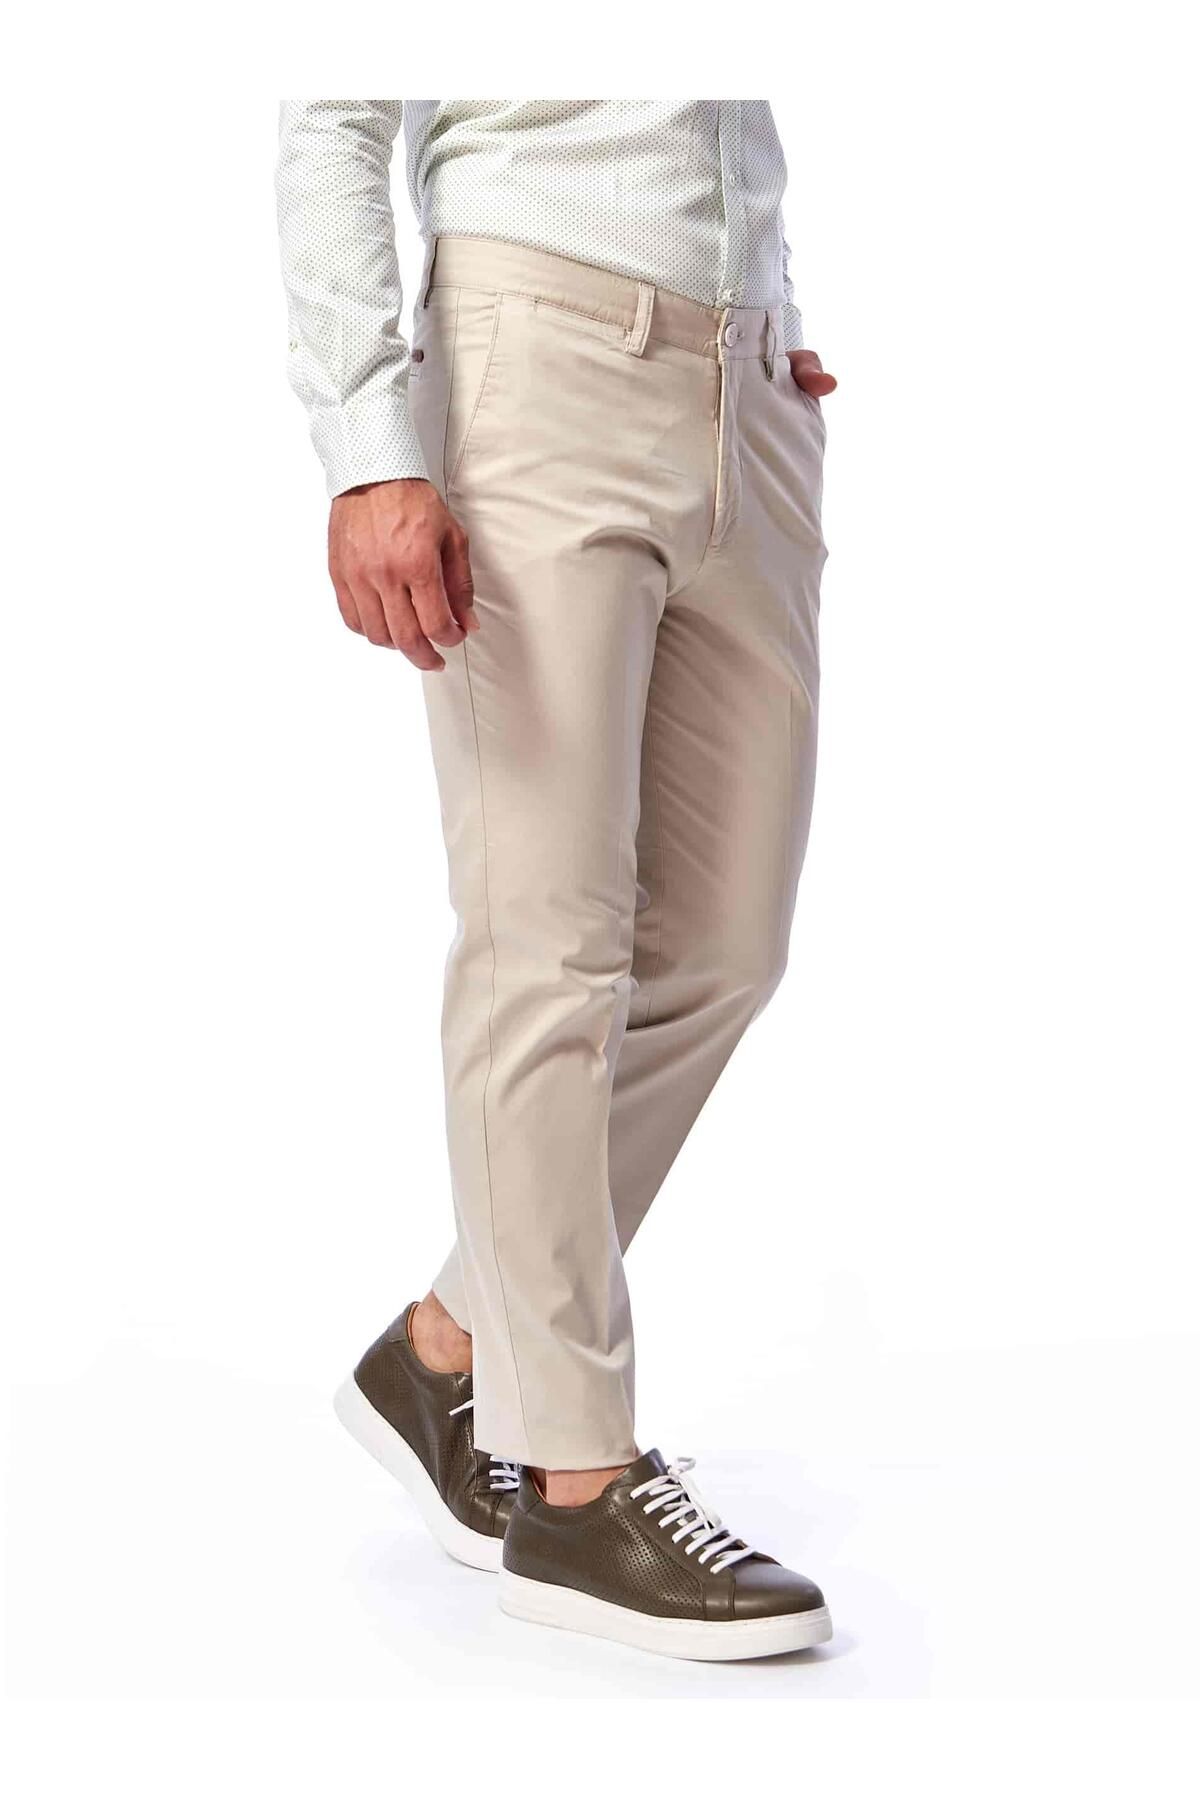 Dufy Taş Erkek Regular Fit Düz Kanvas Pantolon - 38719